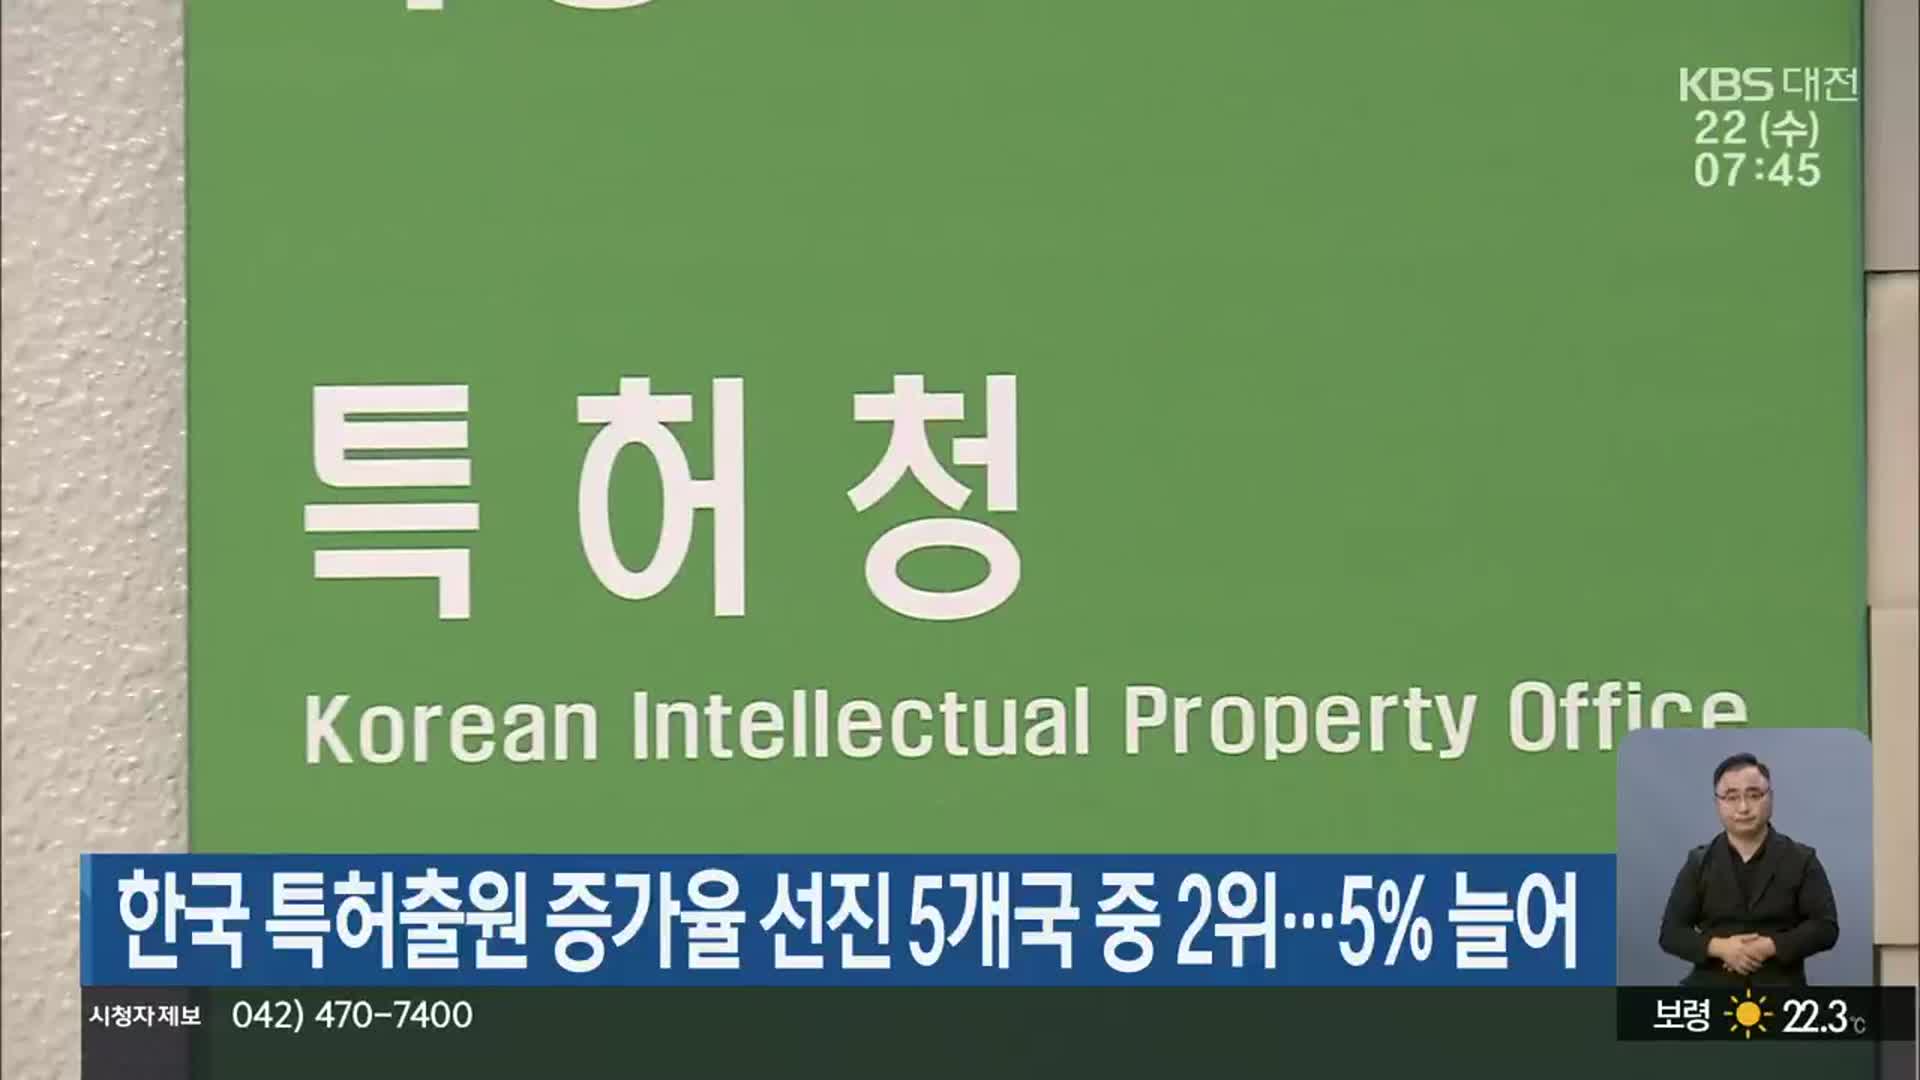 한국 특허출원 증가율 선진 5개국 중 2위…5% 늘어